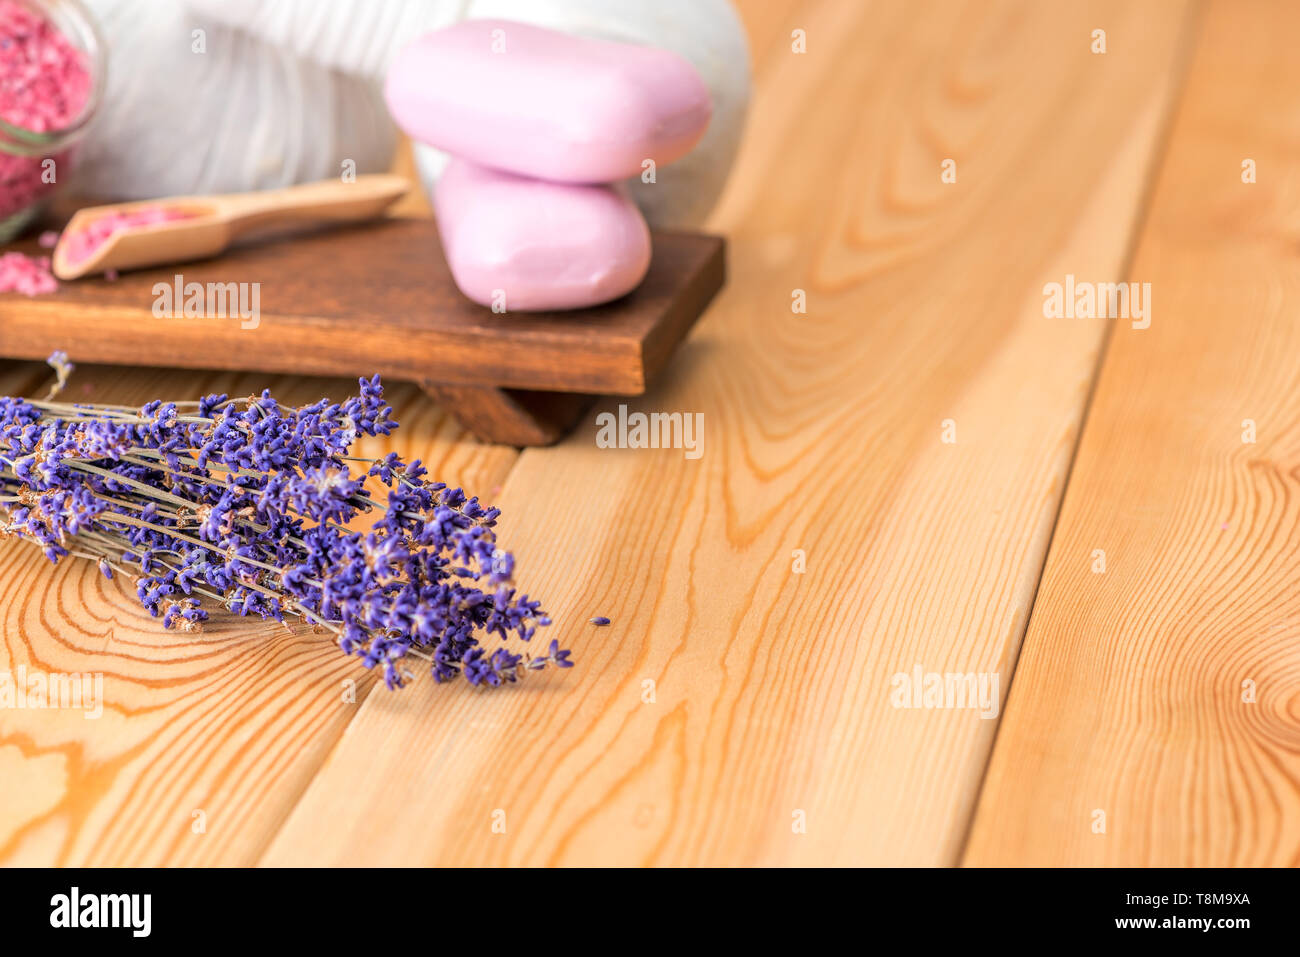 Getrocknet und Lavendel Seife mit Lavendel für Spa Behandlungen und Entspannung auf Holzbretter in der Nähe extrahieren - oben Stockfoto